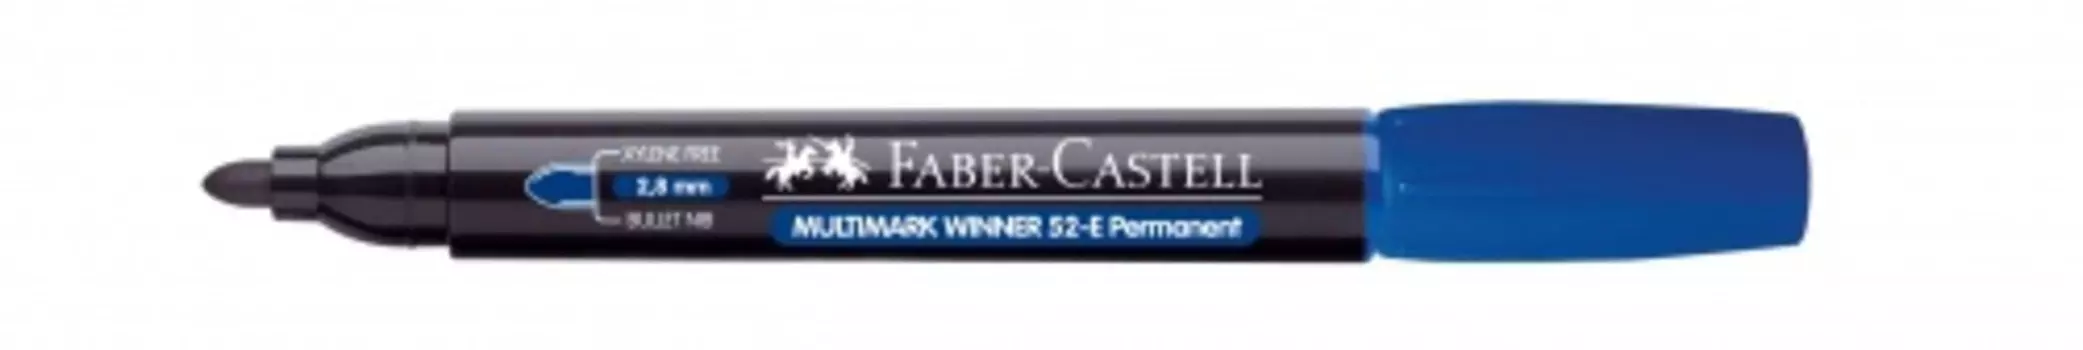 Маркер перманентный Faber-Castell "Winner 52" 1-2 мм, с круглый наконечником, синий